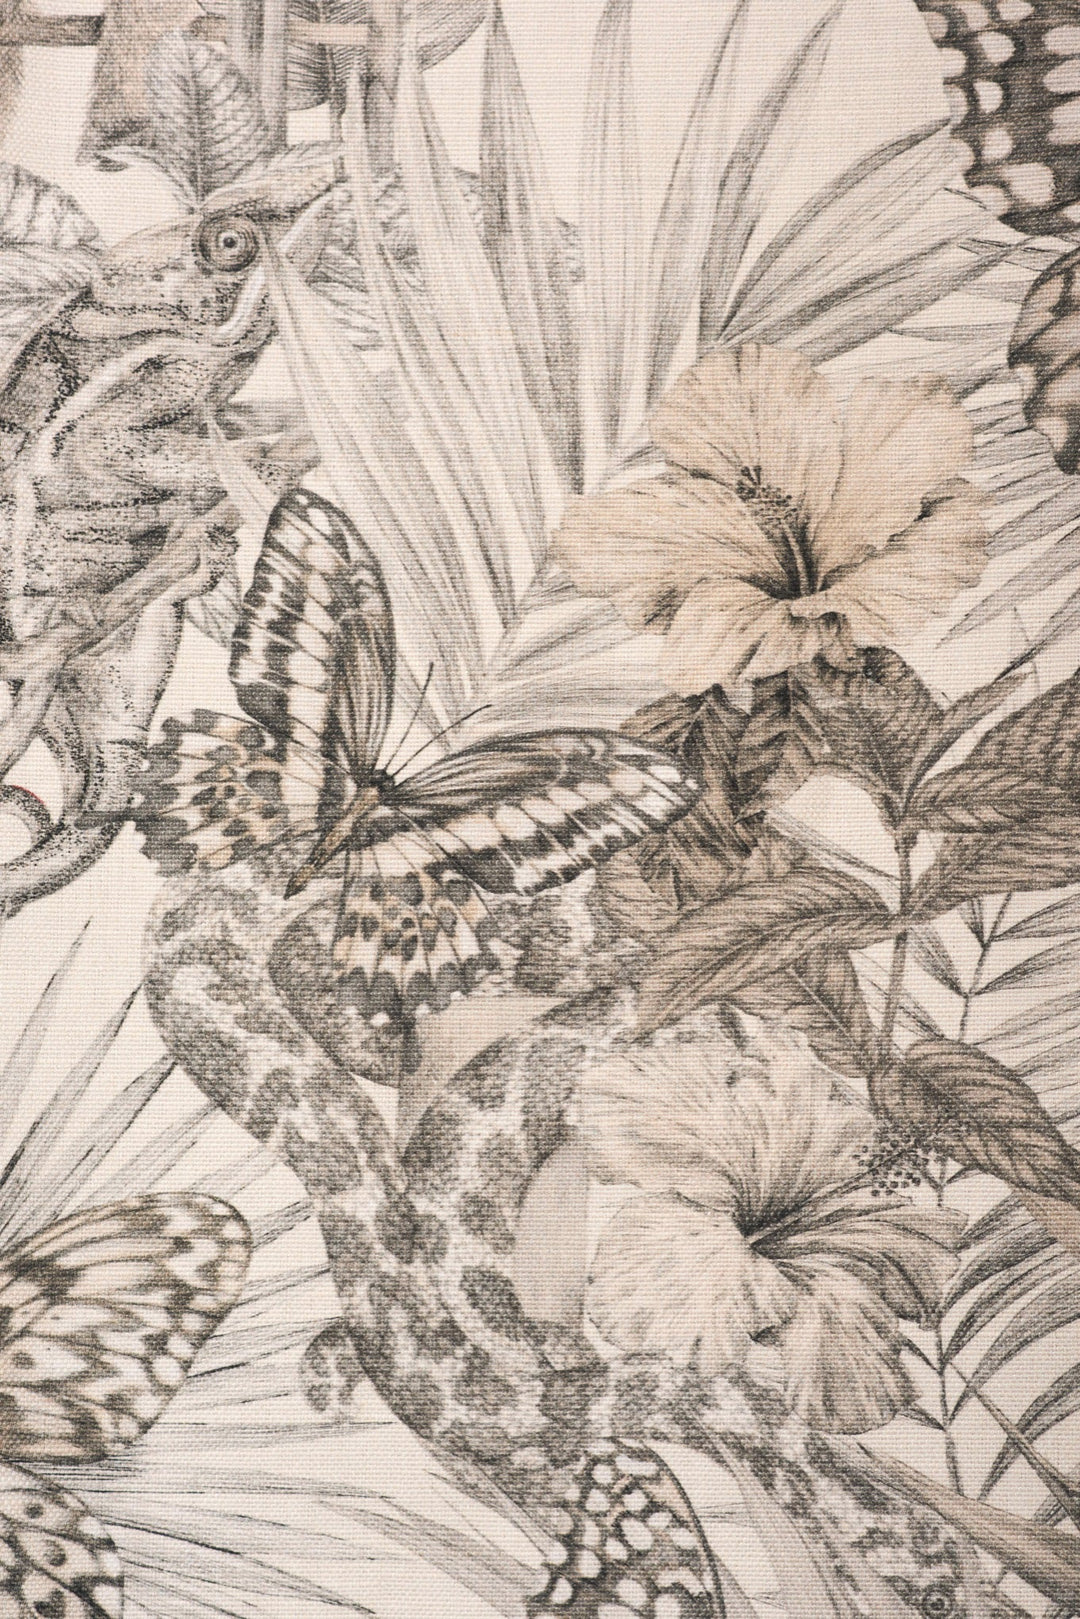 Victoria-Sanders0exotica-fabric-parchment-linen-cotton-charcoal-hand-drawn-illustration-jundle-print-animales-palms-parchment-linen